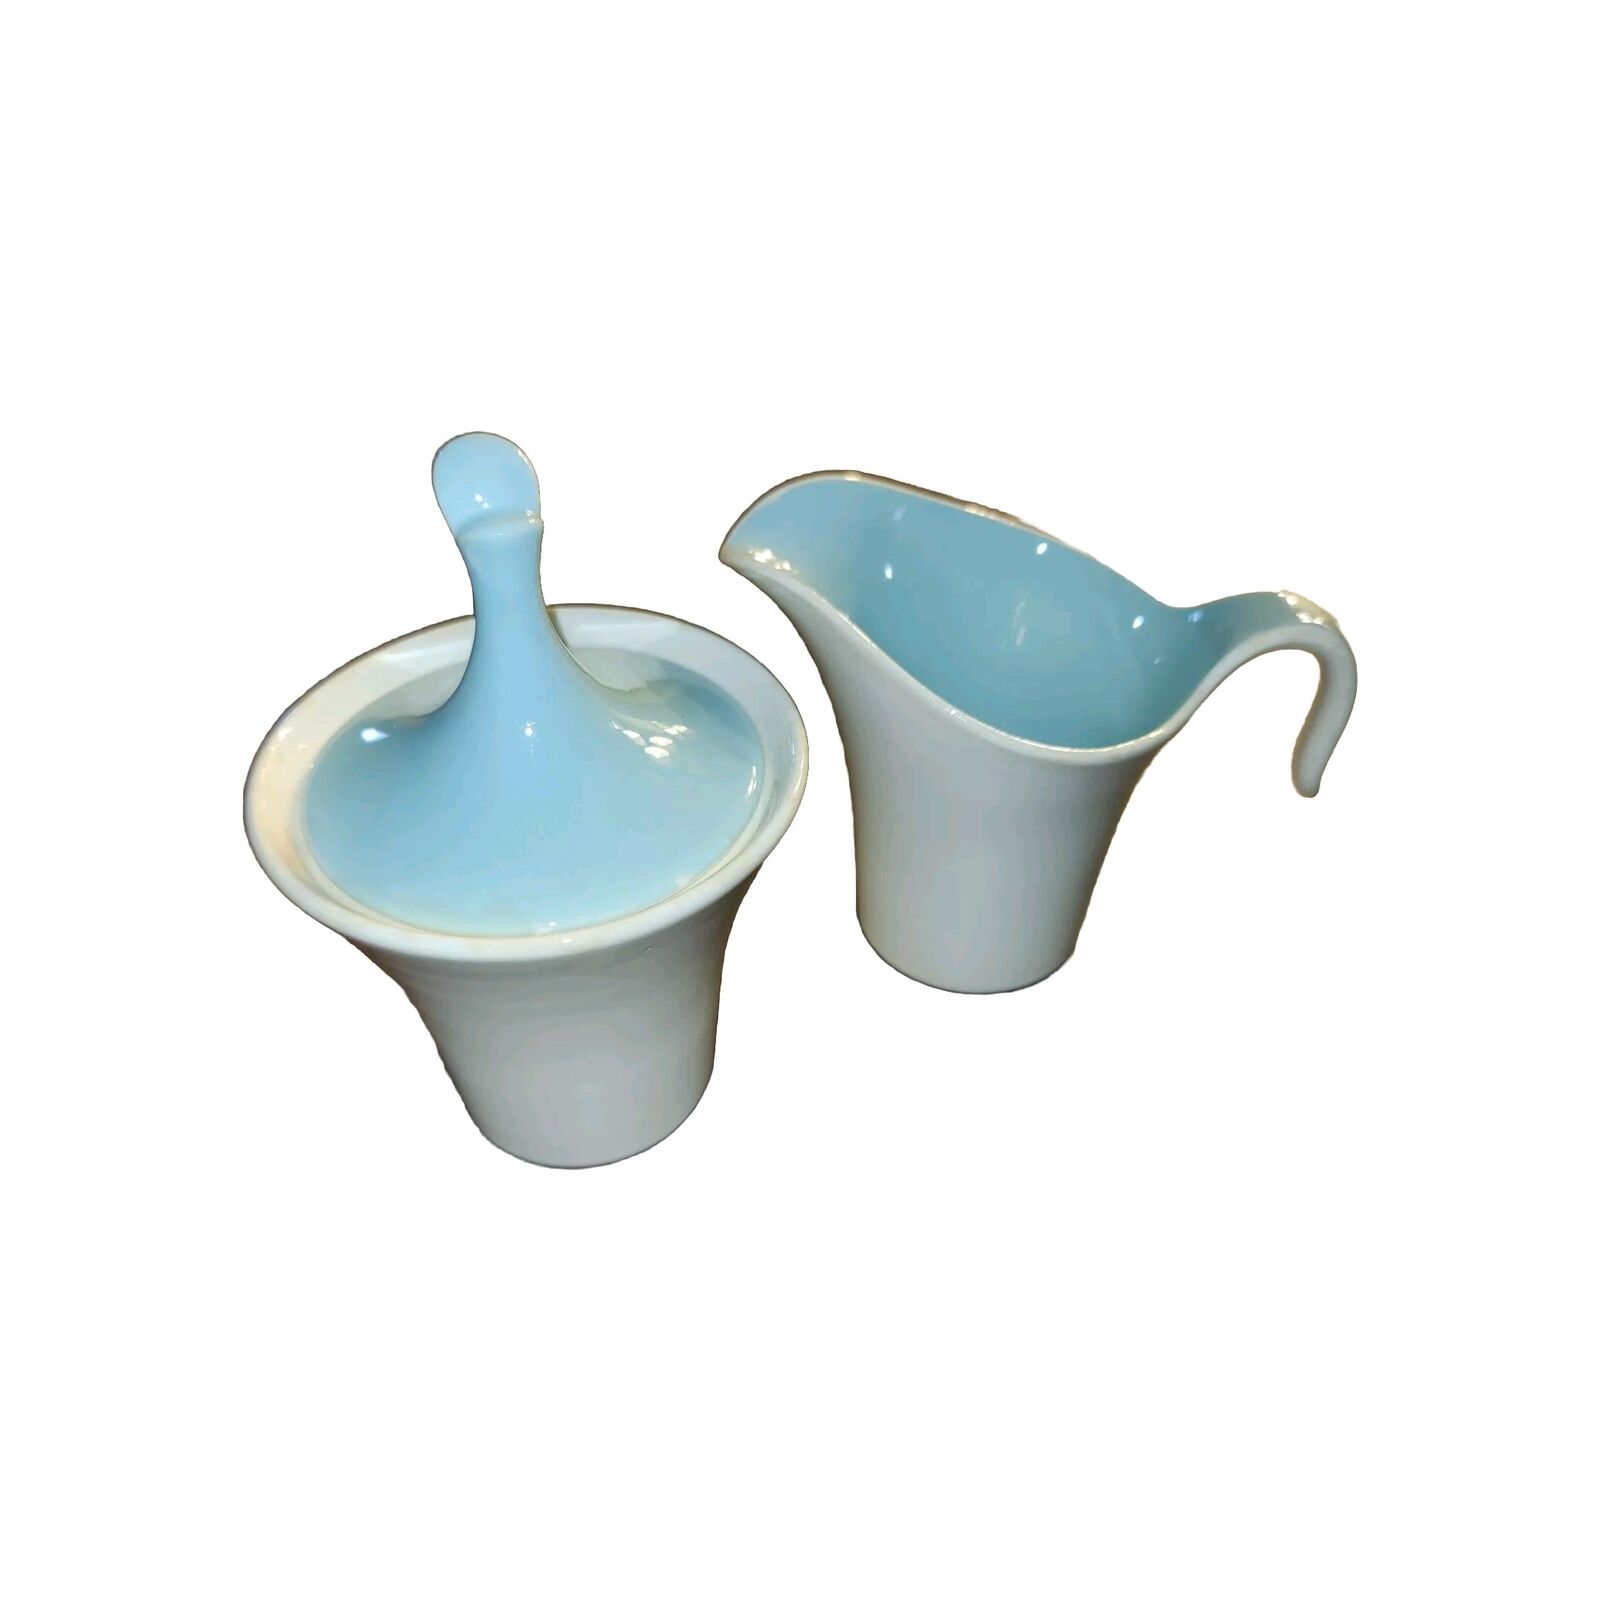 VTG Harker Creamer Sugar Bowl Set Lid Star Lite Sky Blue MCM Style 